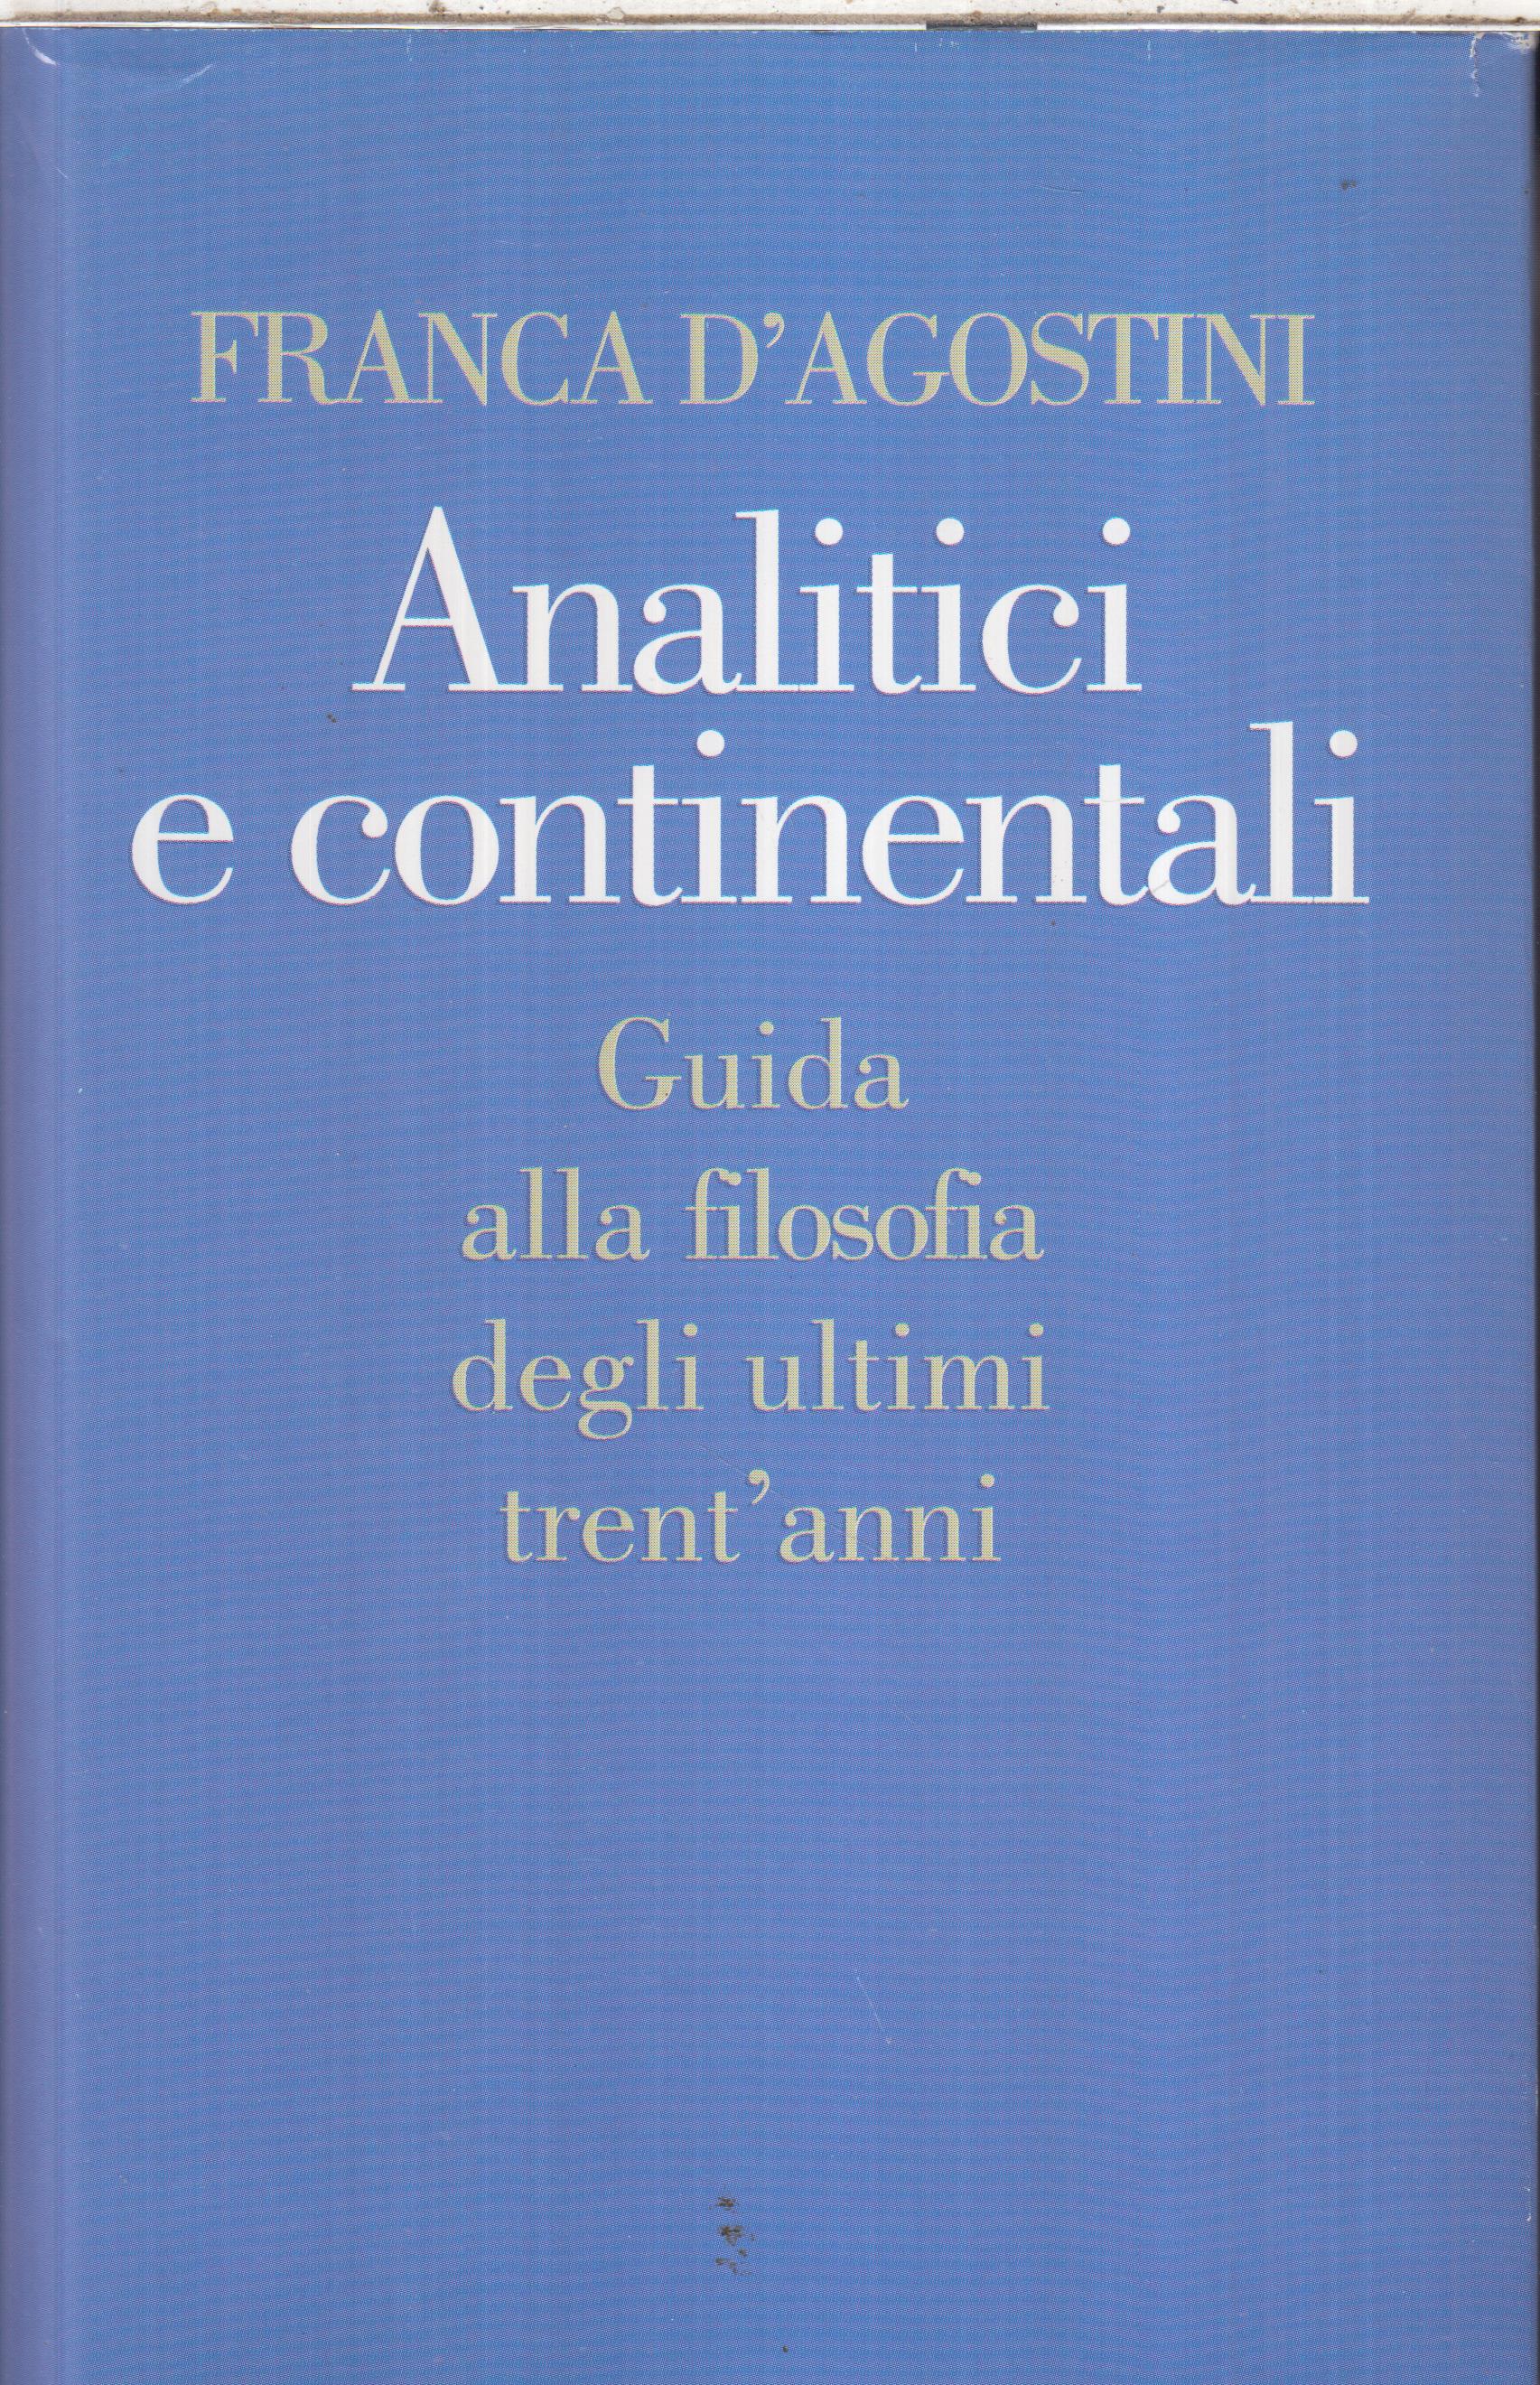 Analitici e continentali – guida alla filosofia degli ultimi trent’anni, Franca D’Agostini